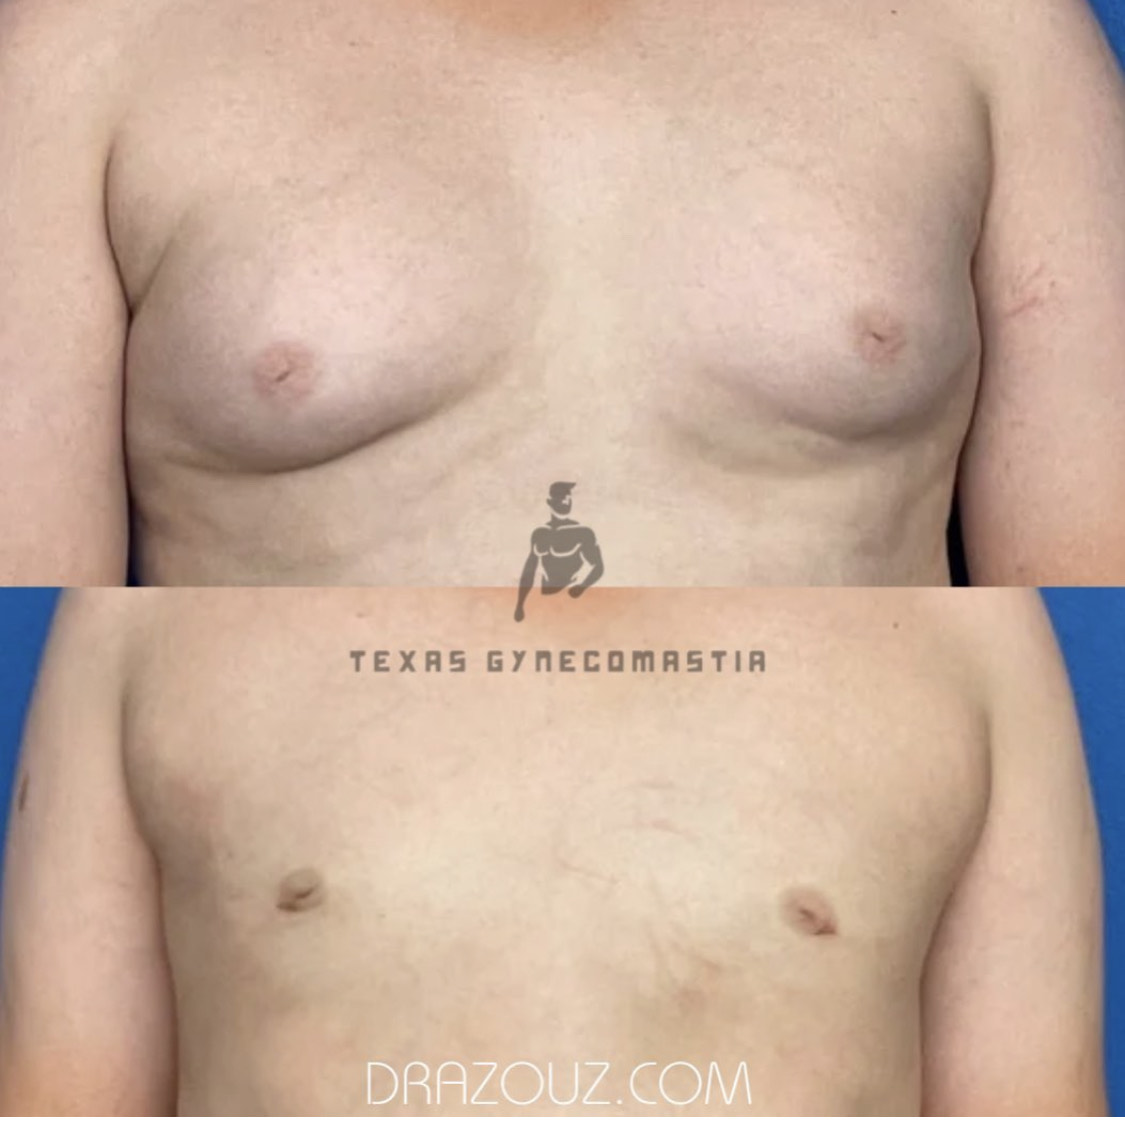 Cirugía de ginecomastia por el Dr. Azouz en Dallas, TX